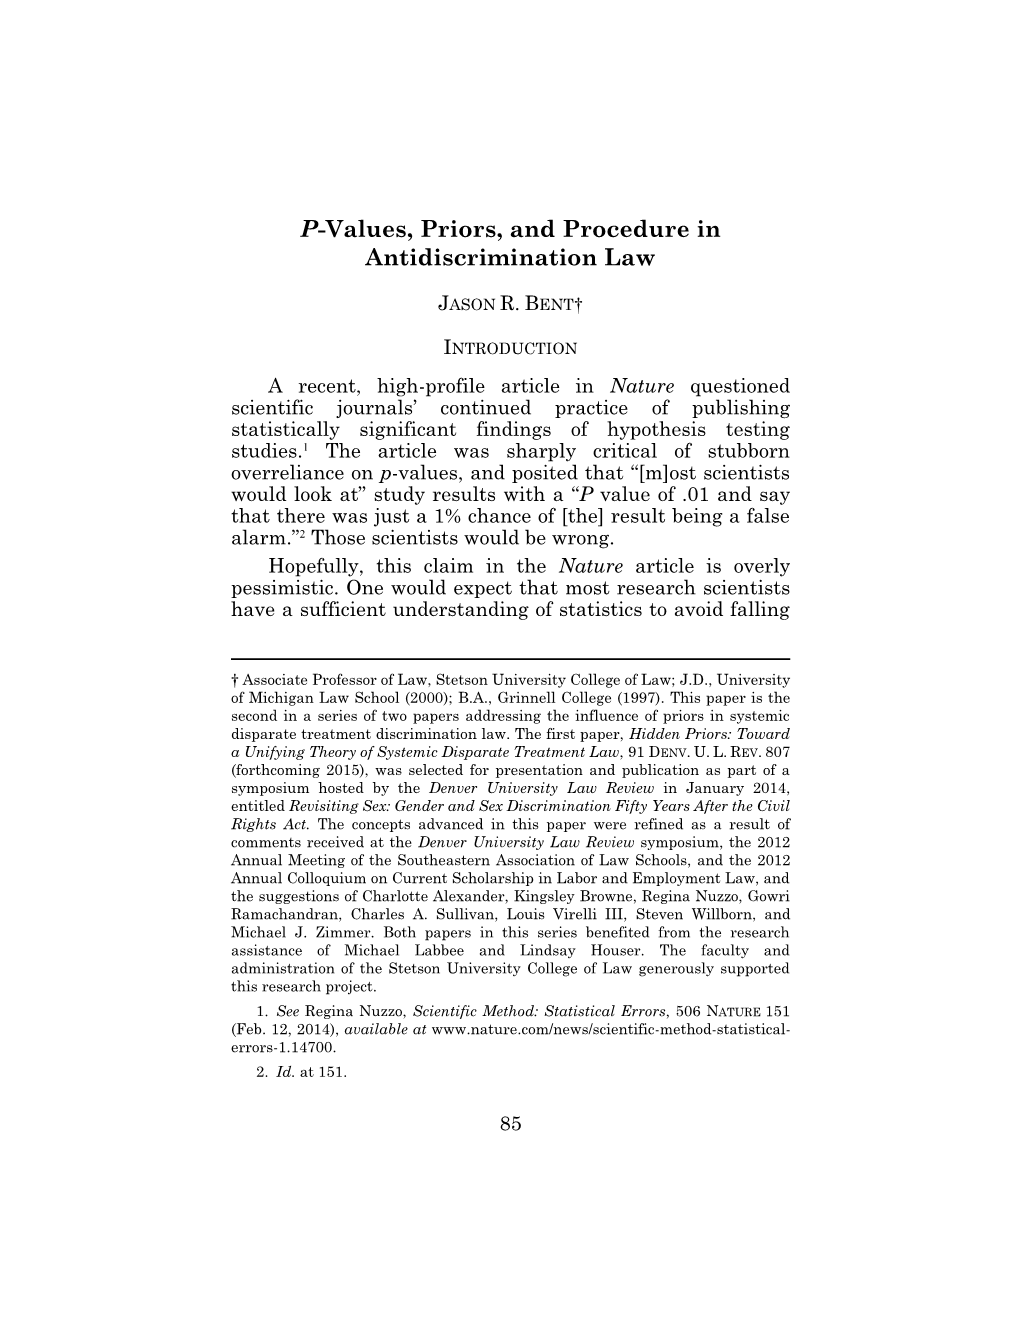 Jason R. Bent, P-Values, Priors, and Procedure in Antidiscrimination